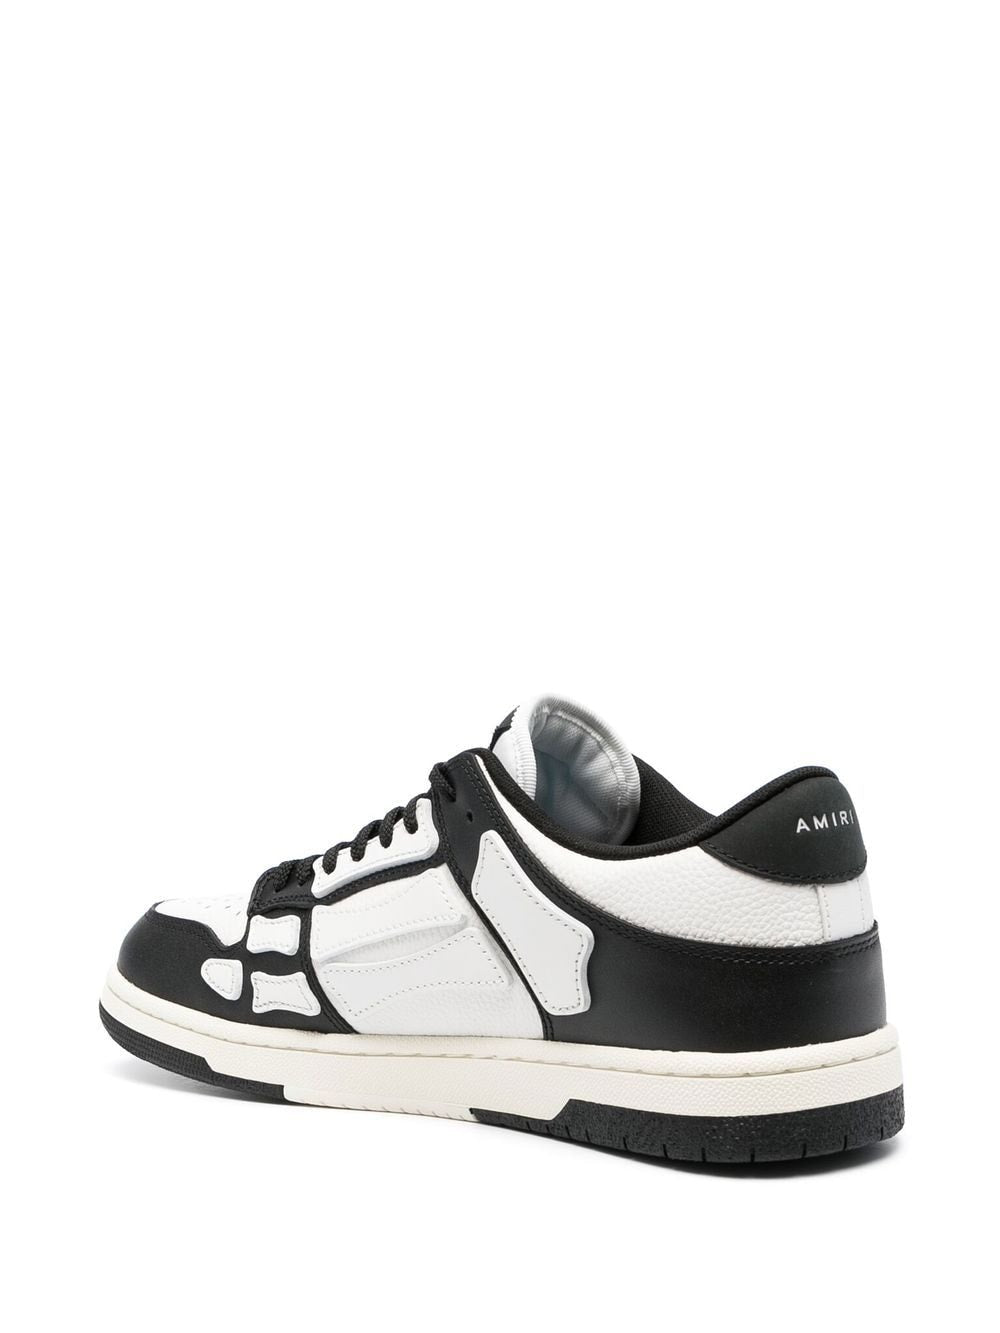 Giày Sneakers Nam da cao cấp SKEL-TOP LOW với chi tiết xương trắng